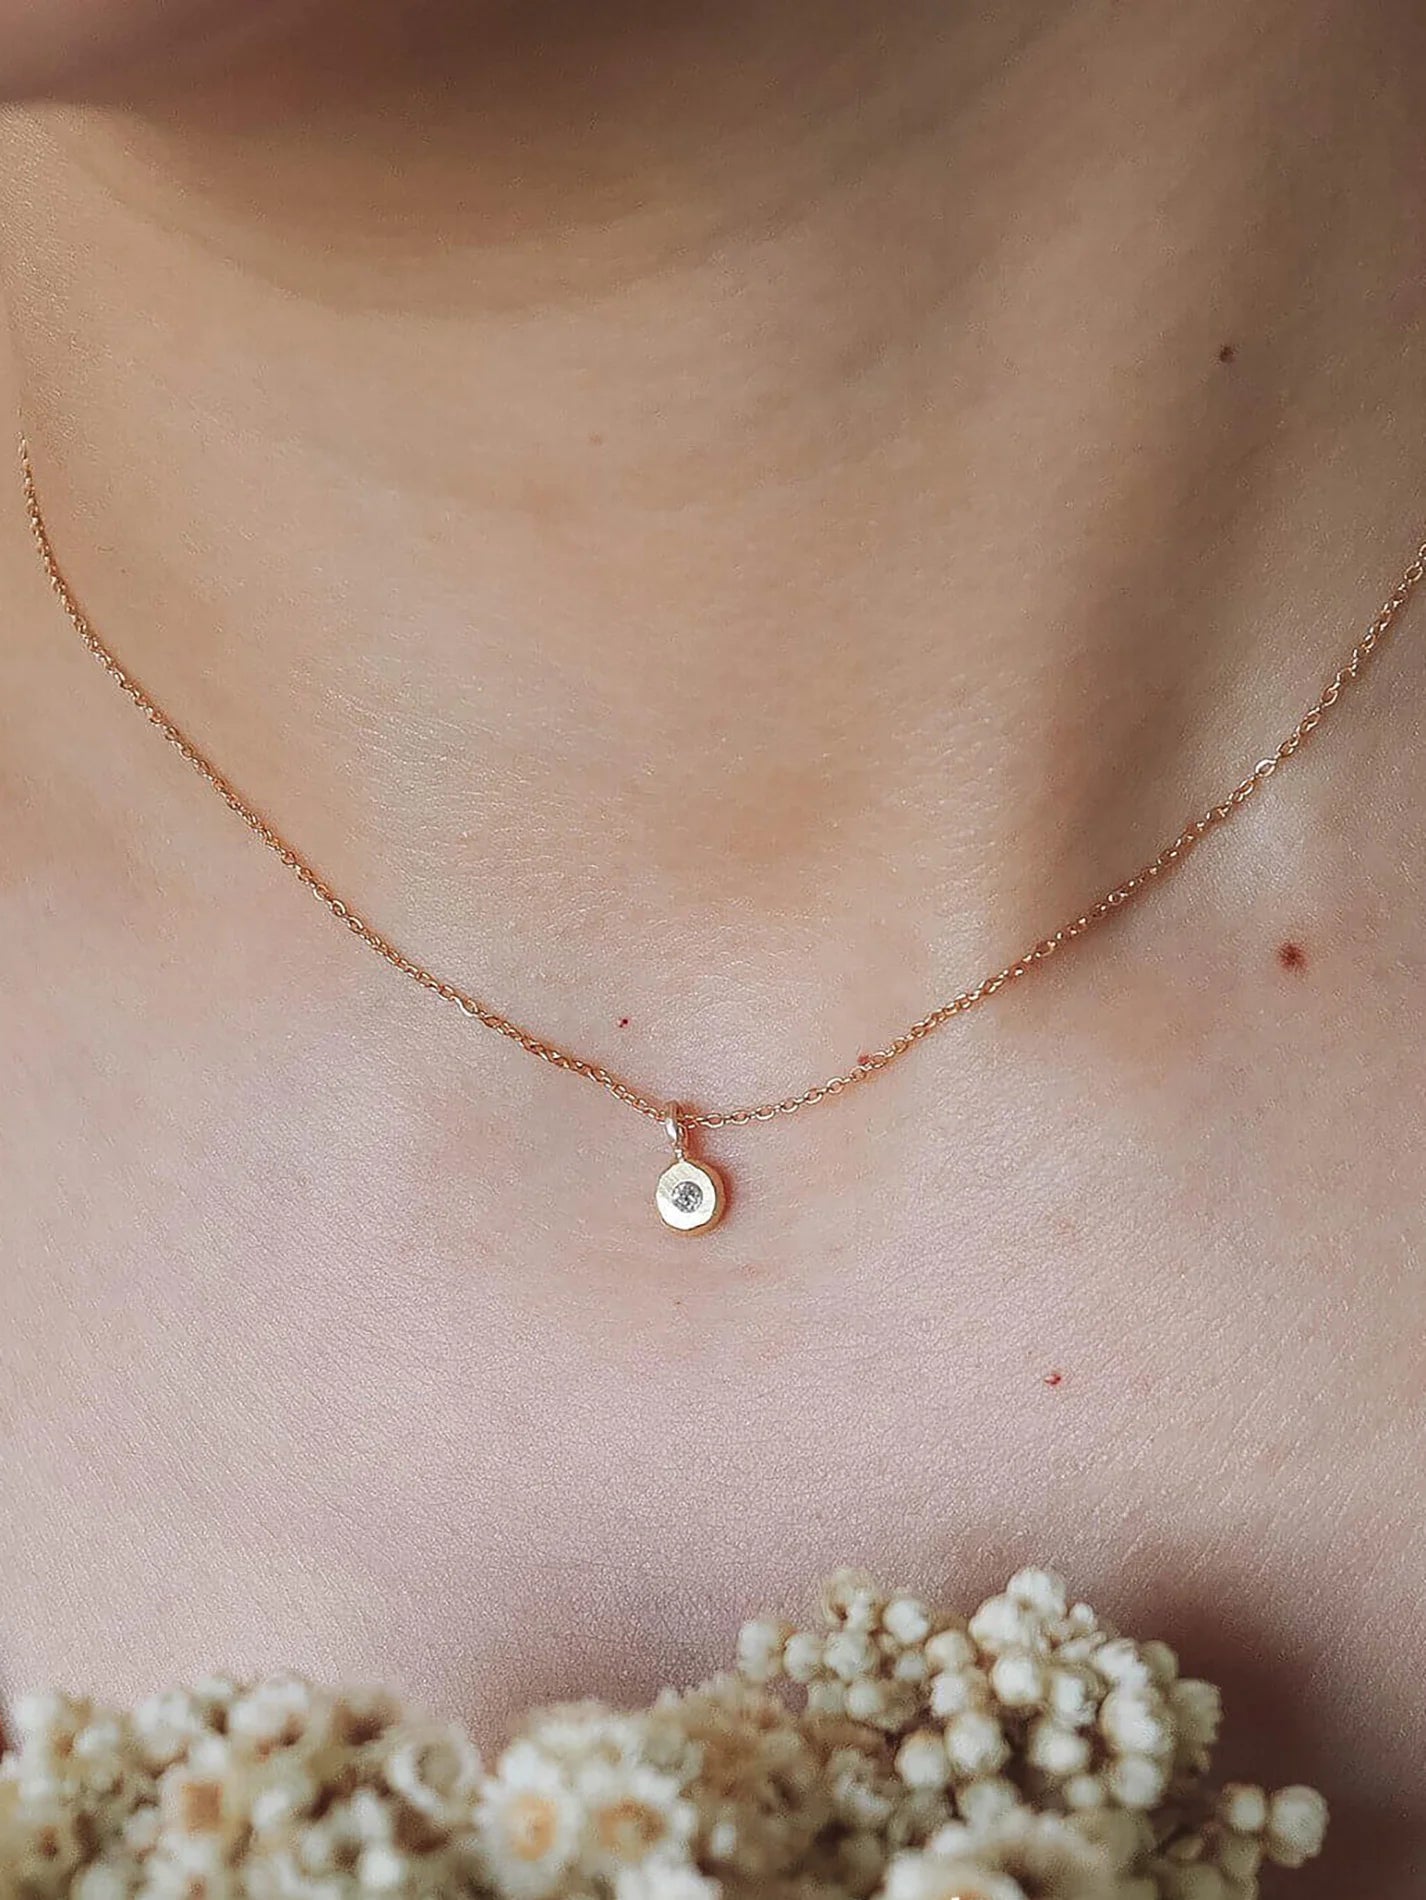 Tiny Diamond Necklace. Black or White diamond